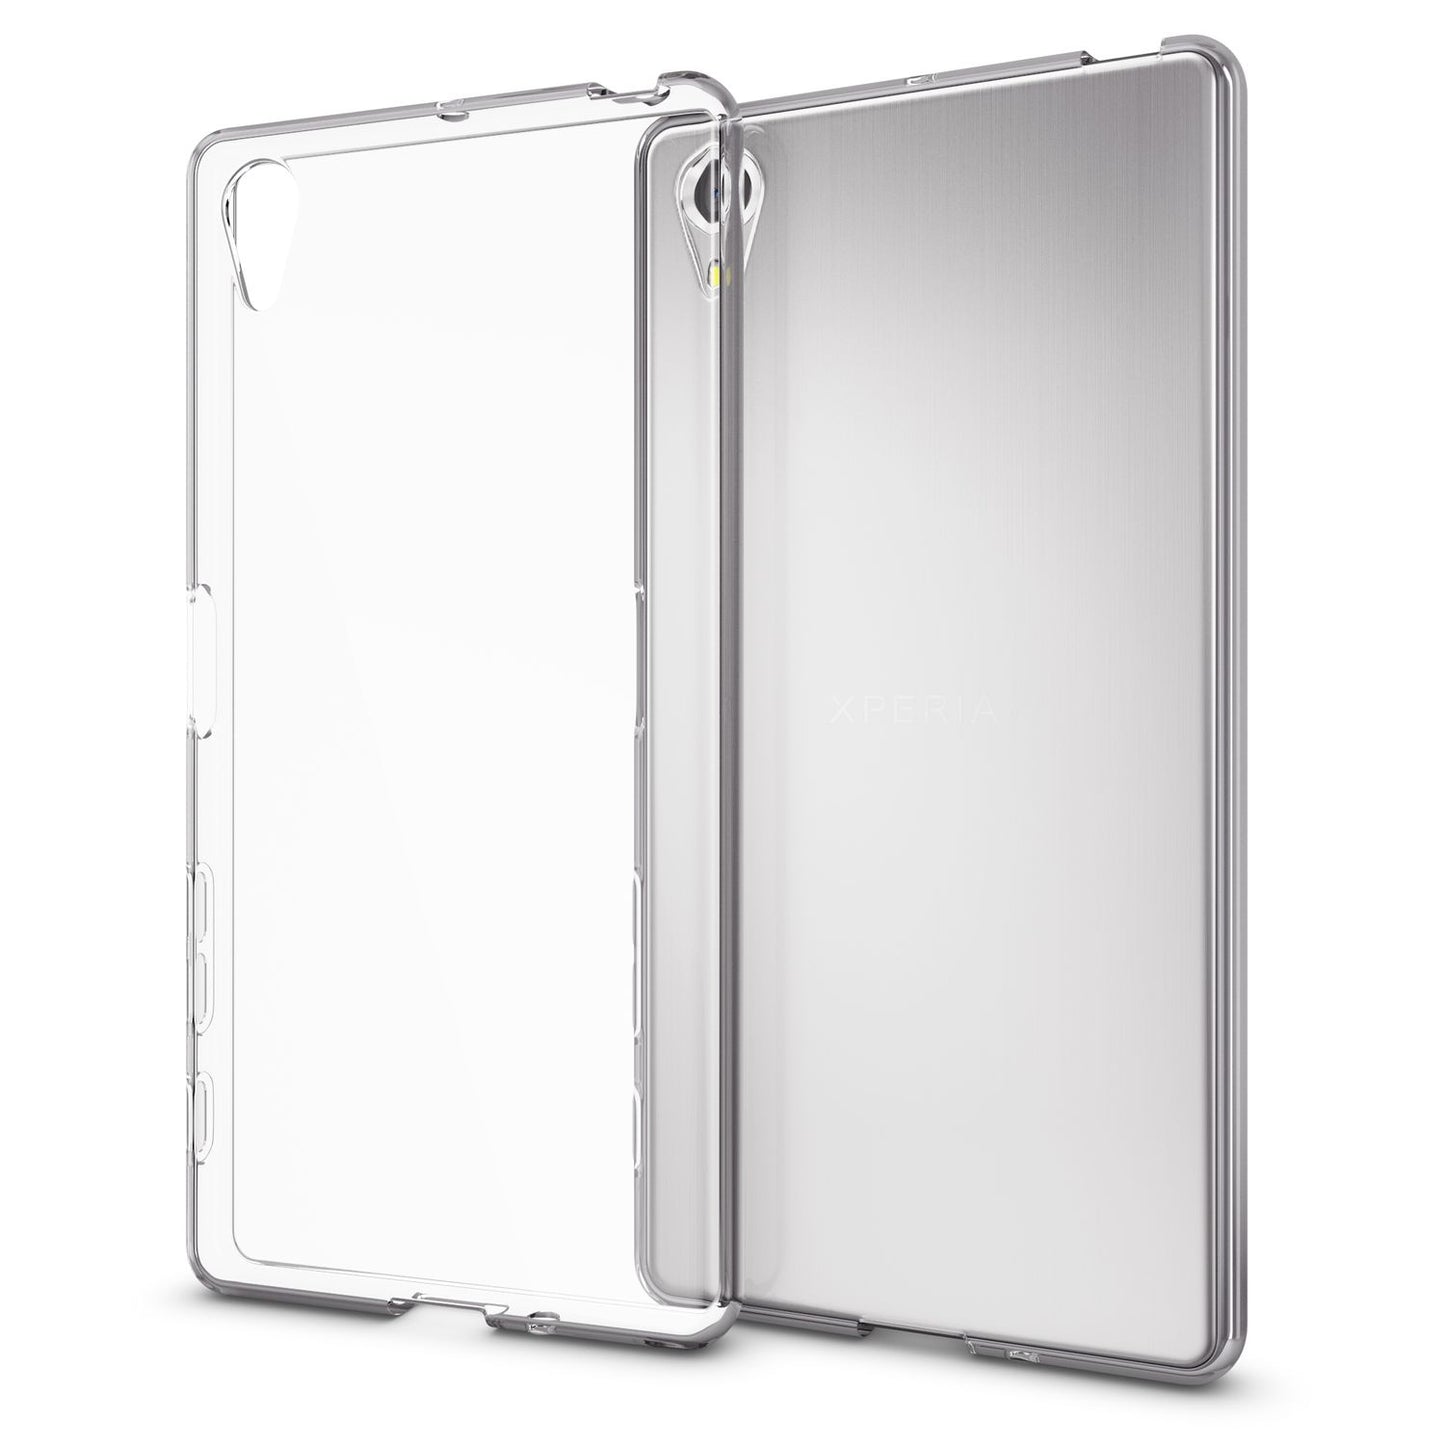 NALIA Hülle für Sony Xperia X, Transparente Schutzhülle Case Cover Handyhülle